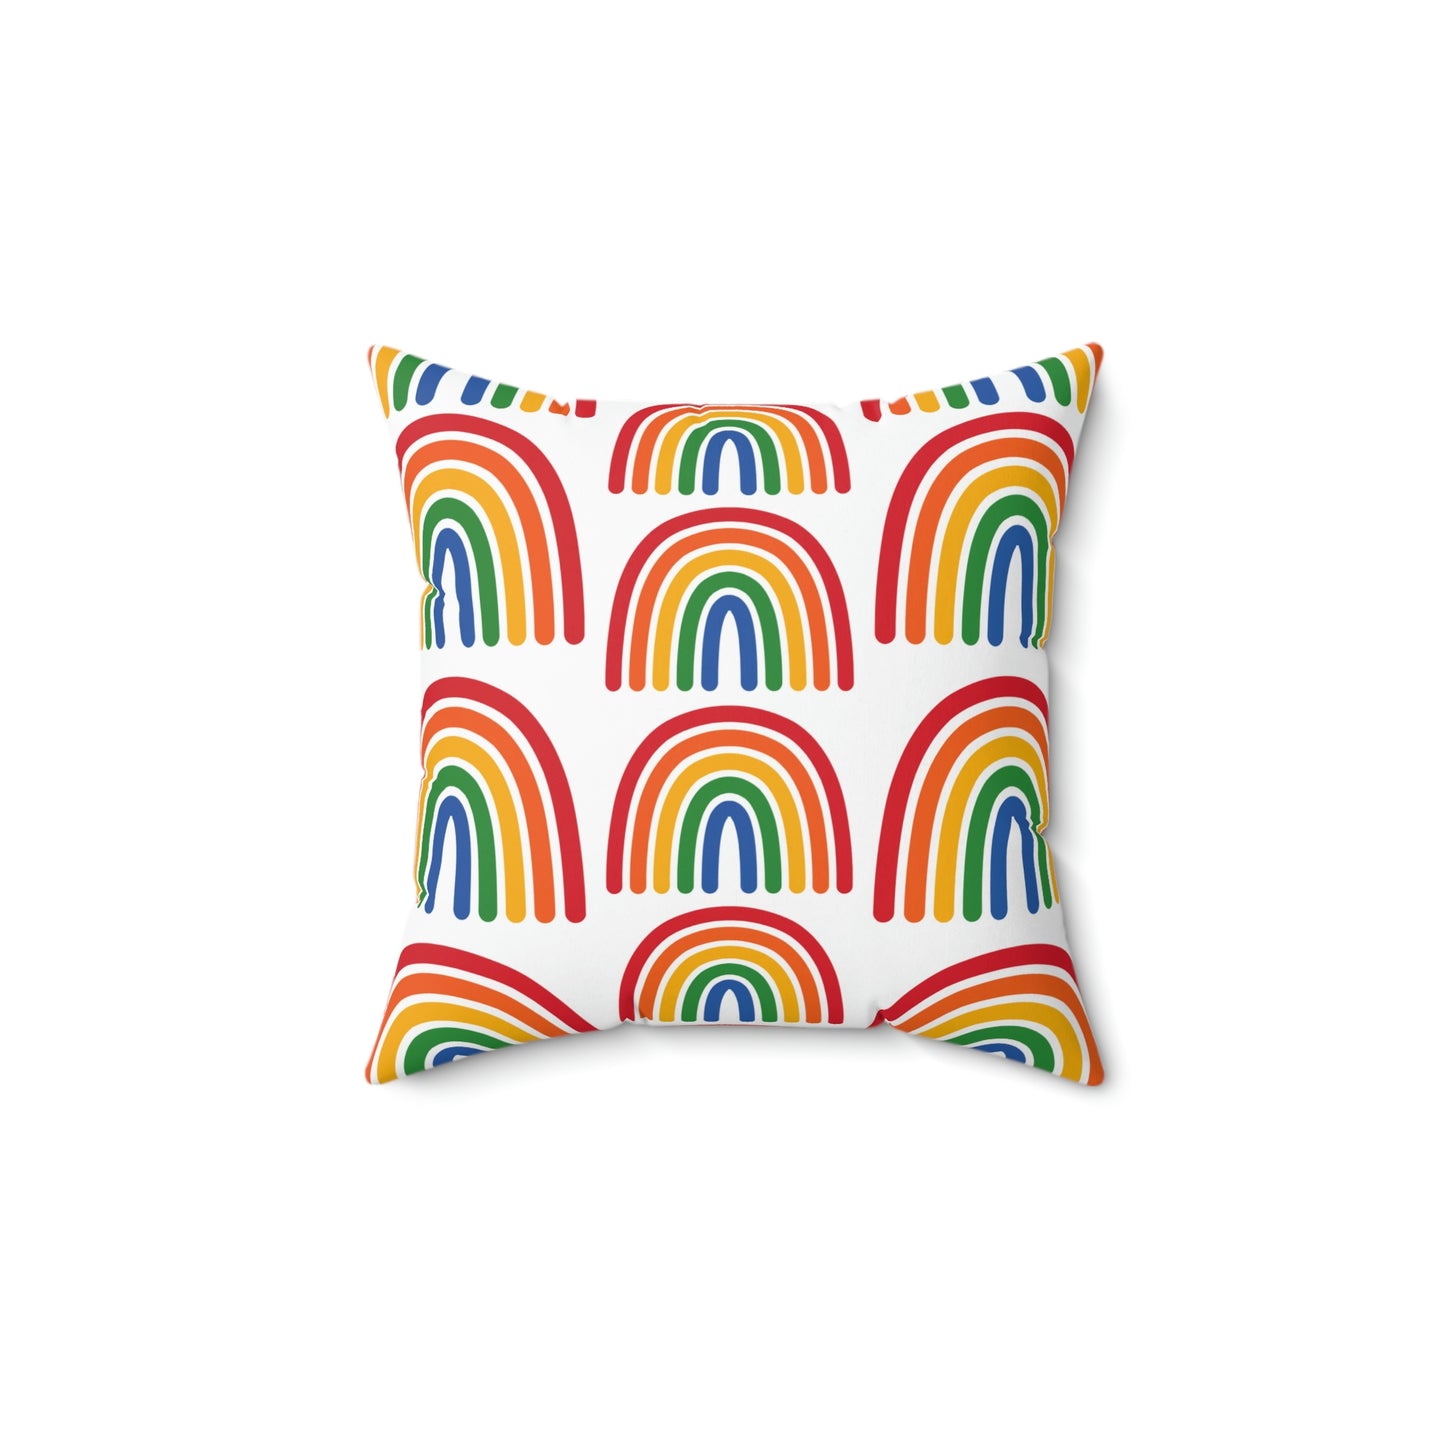 Rainbow Pillow, Multiple Rainbow, Drop pattern